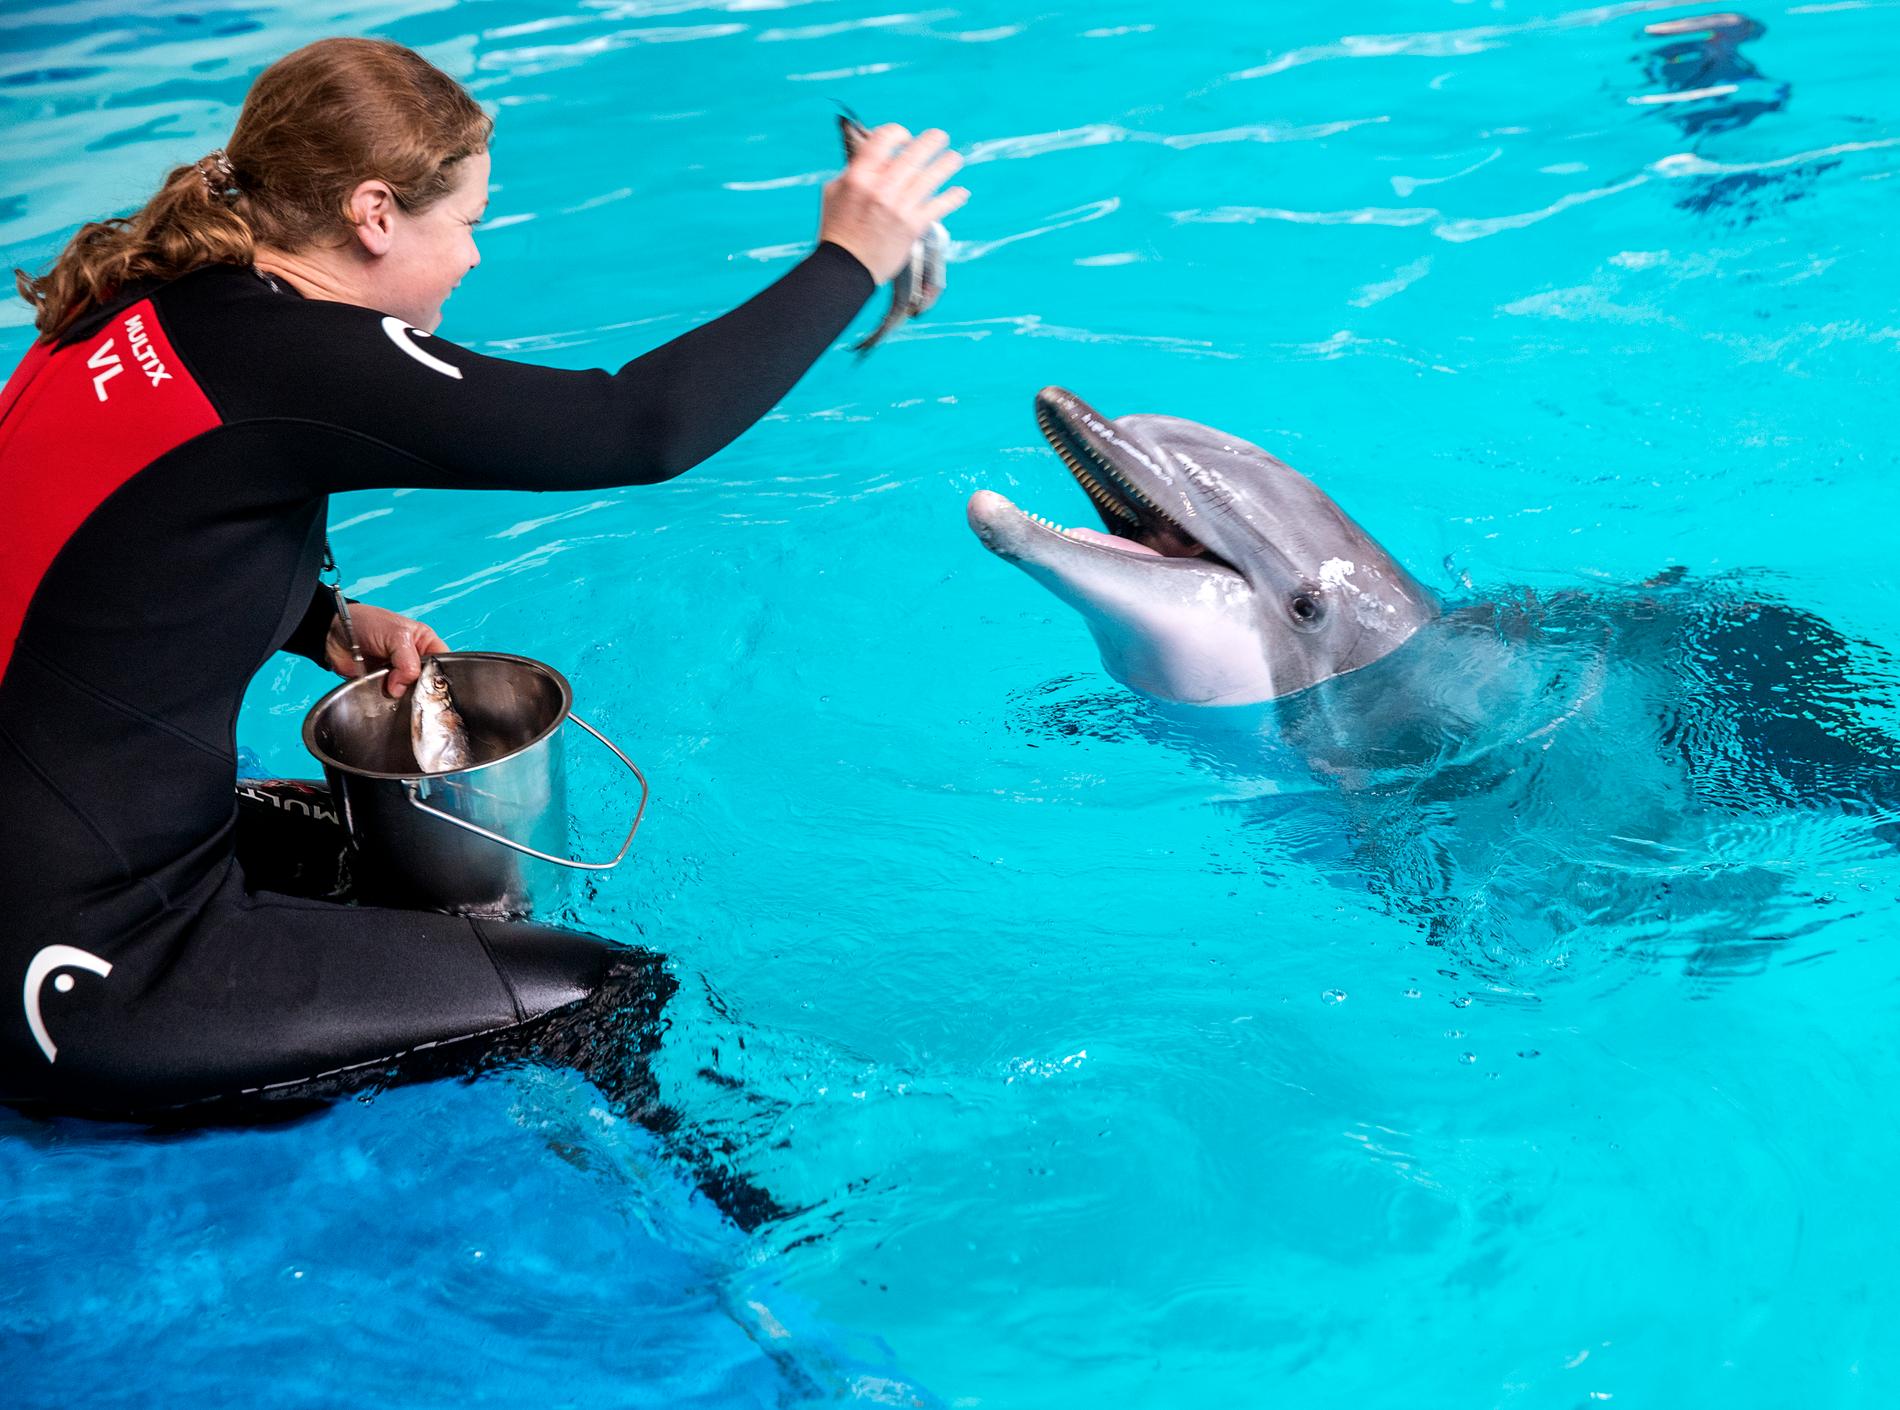 Delfin som undersöks på Kolmårdens djurpark, 2019. Lars Berge undersöker i podden ”Simma med delfiner” bland annat människans ambivalenta band till delfiner.